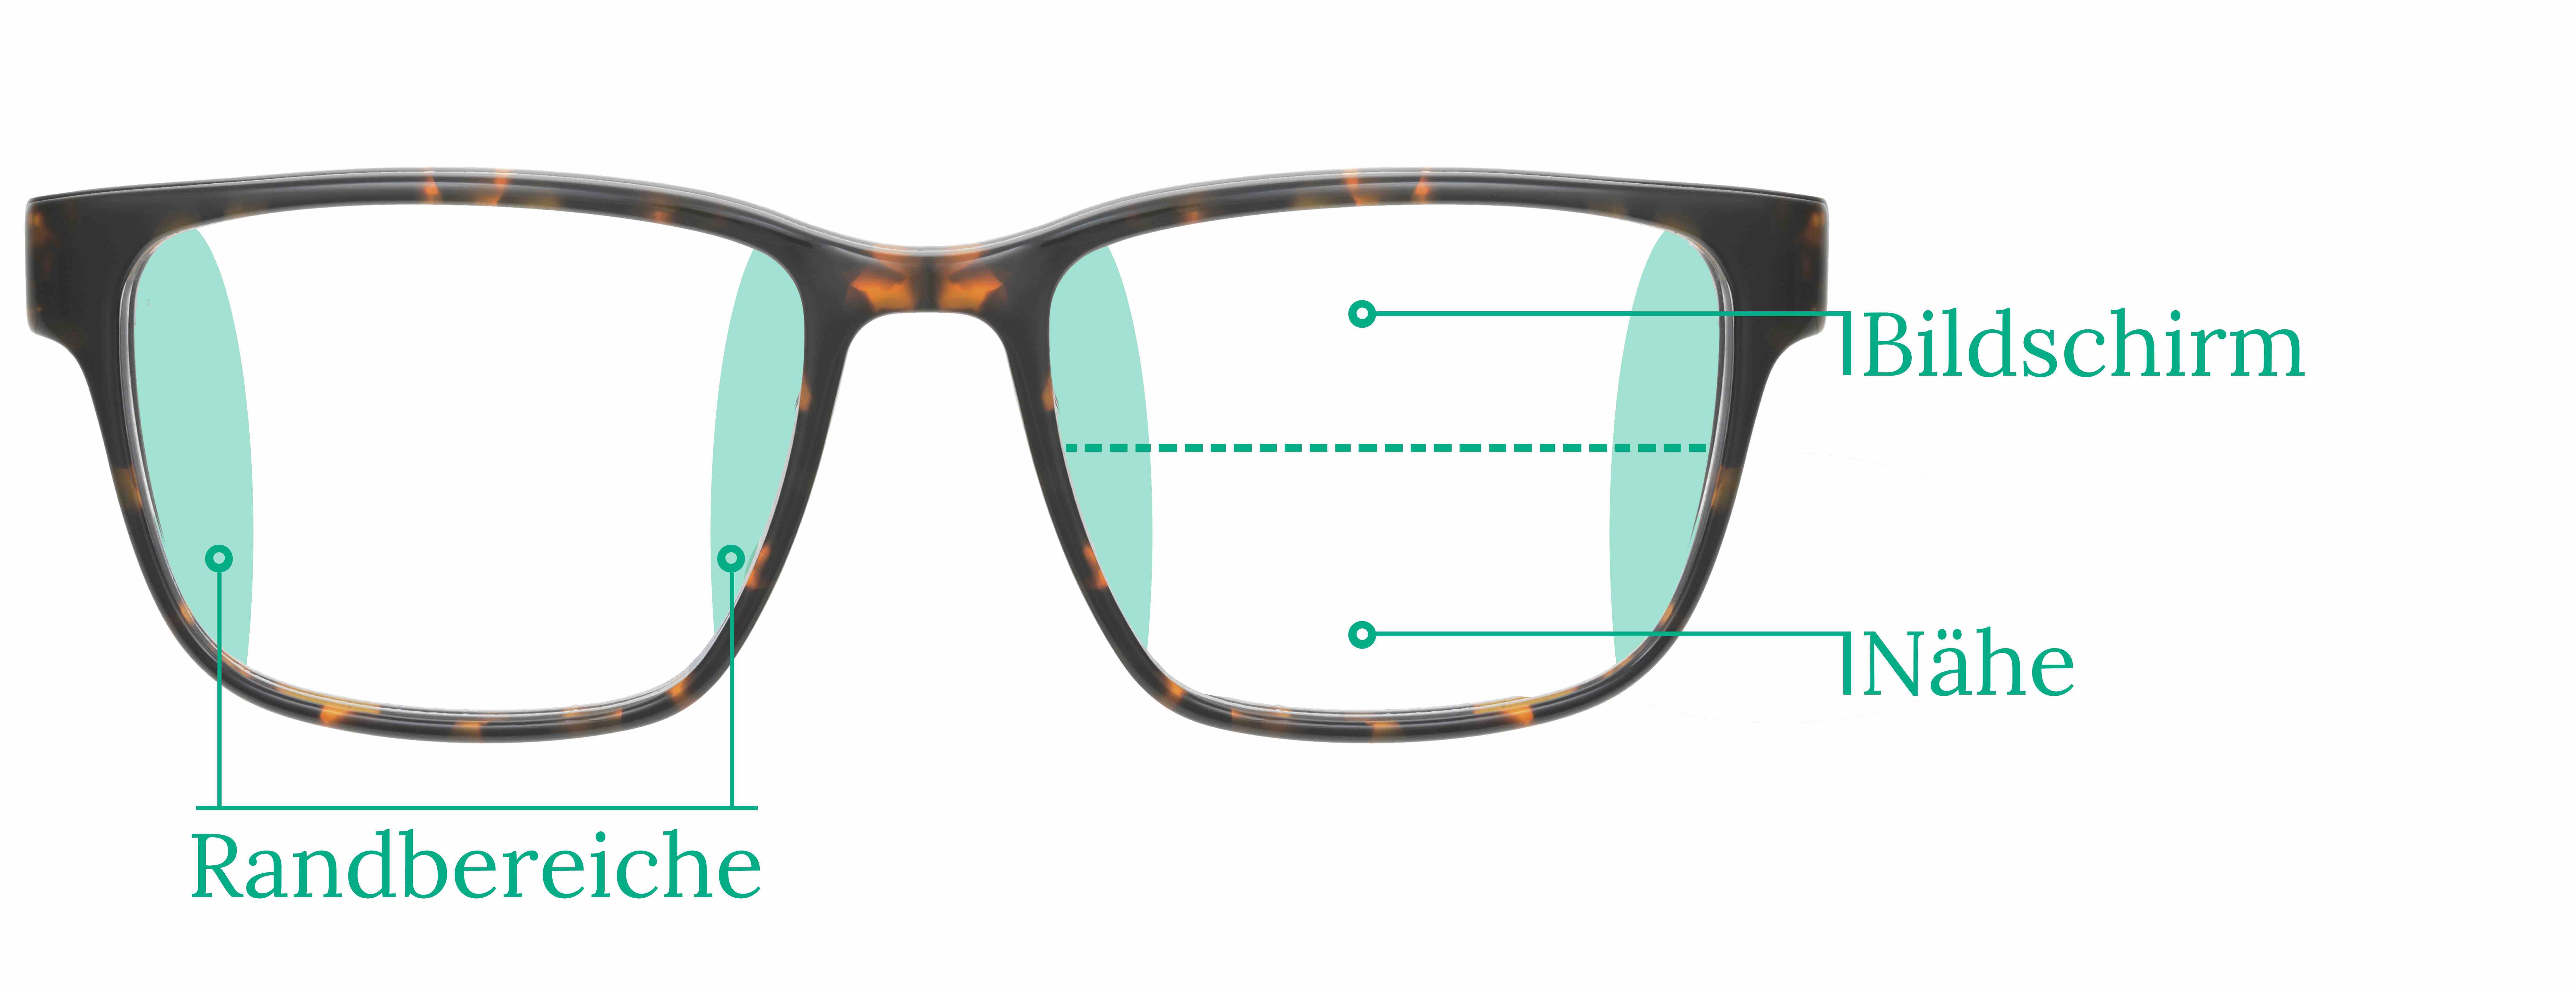 Wann und warum eine Bildschirm-Arbeitsbrille sinnvoll ist › Gesundheitsoptik